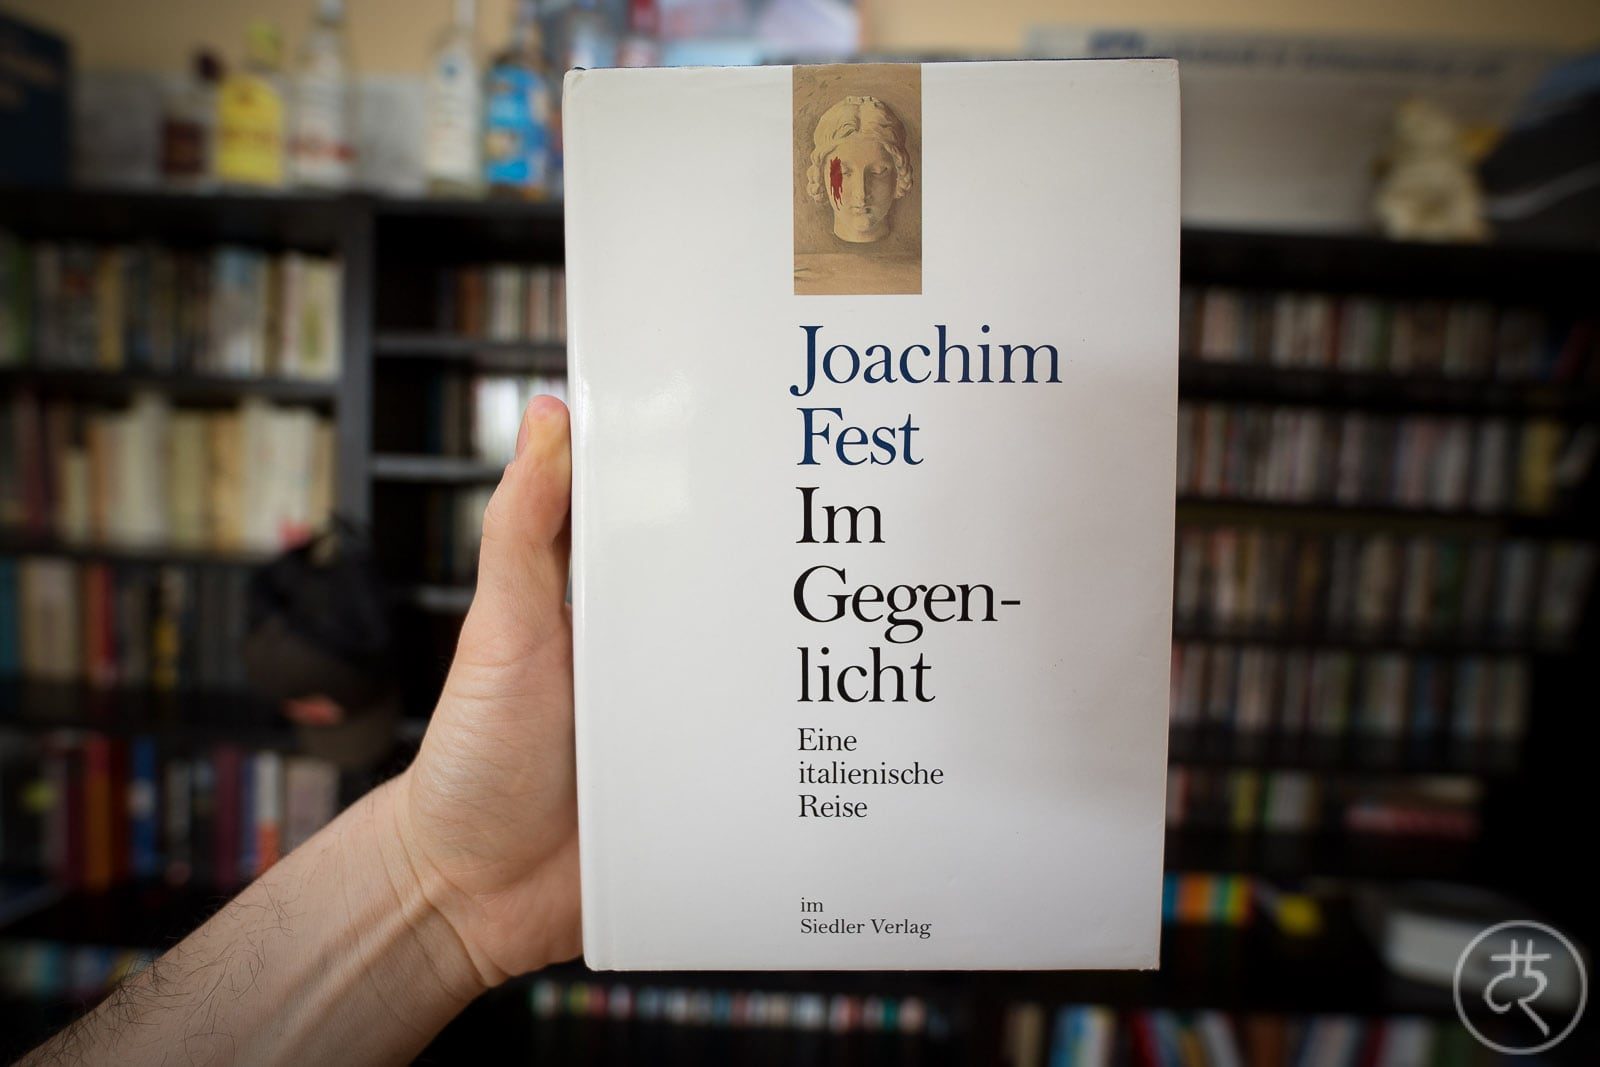 Joachim Fest's 